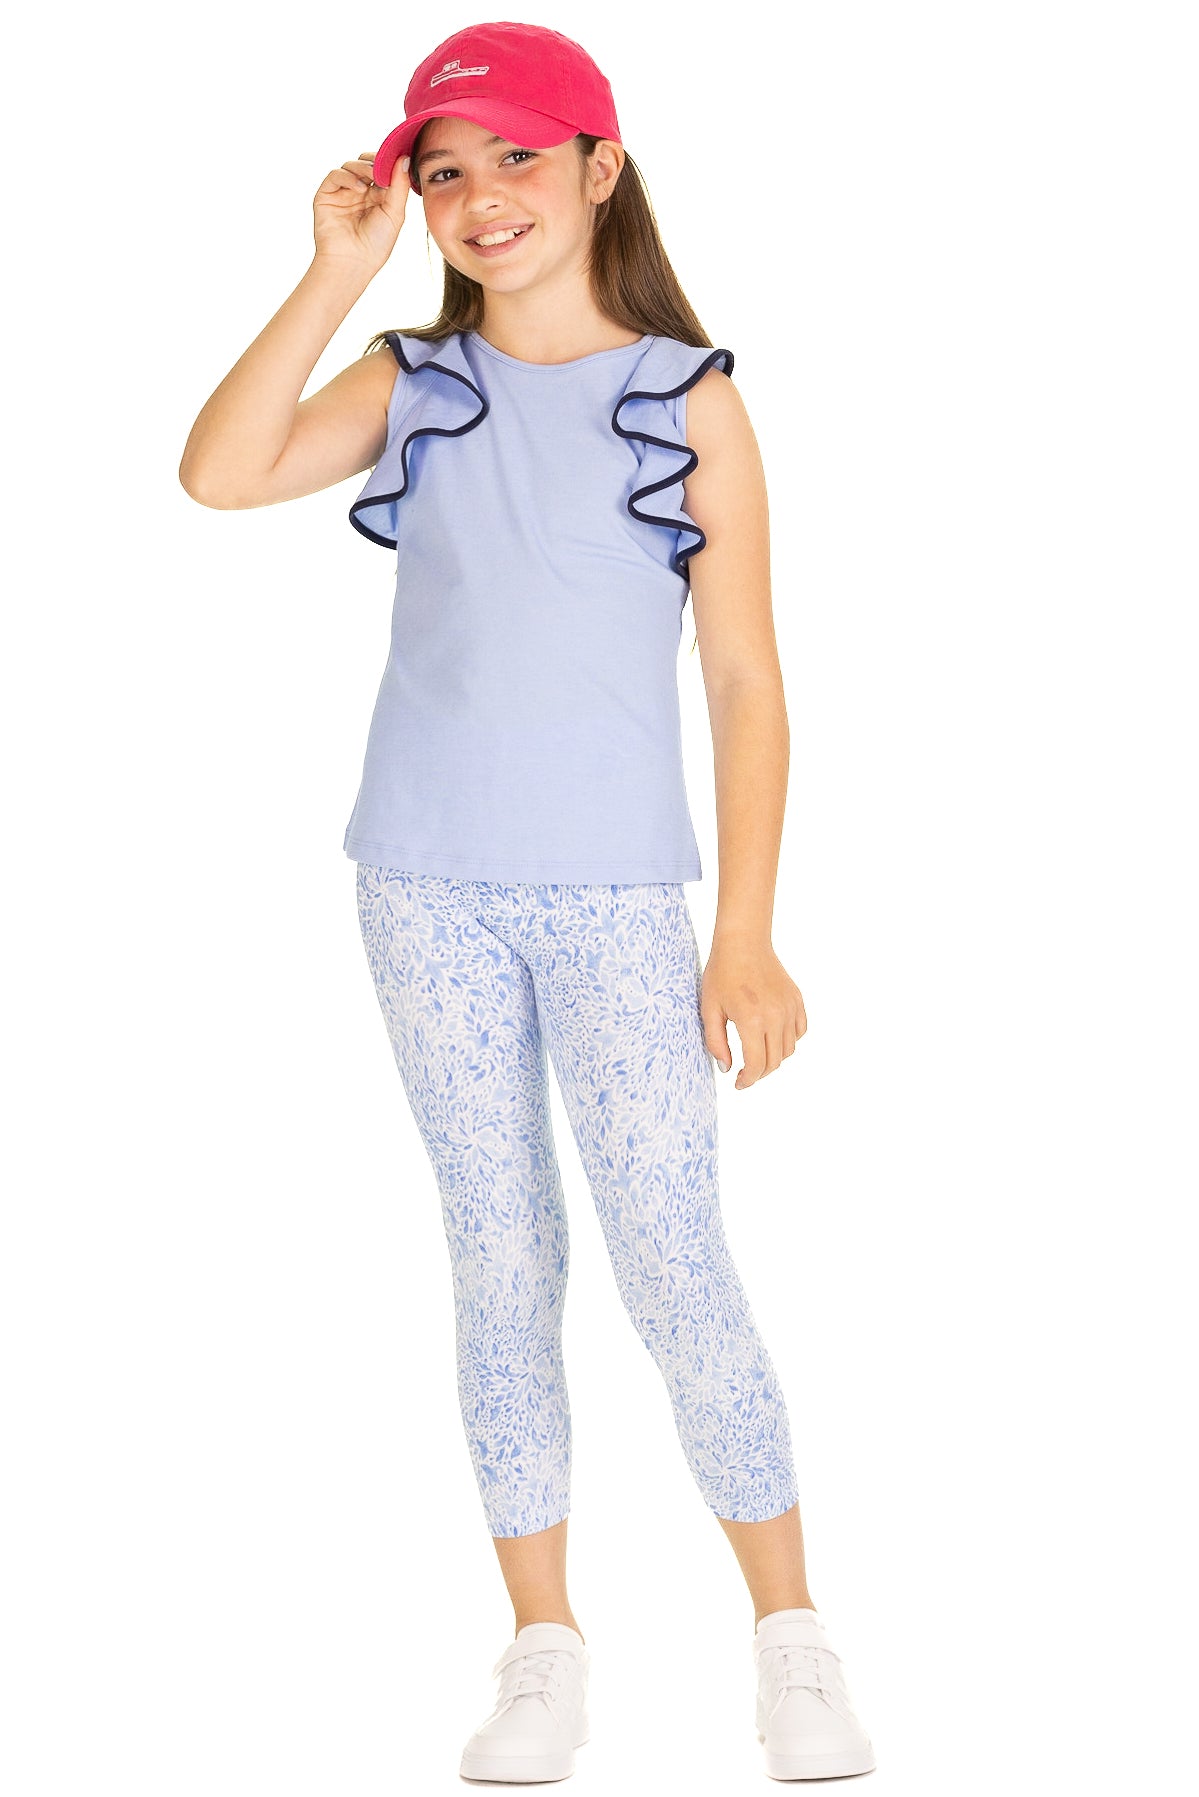 Girls Capri Lolly leggings in Blue Hydrangea - 10 - Duffield Lane